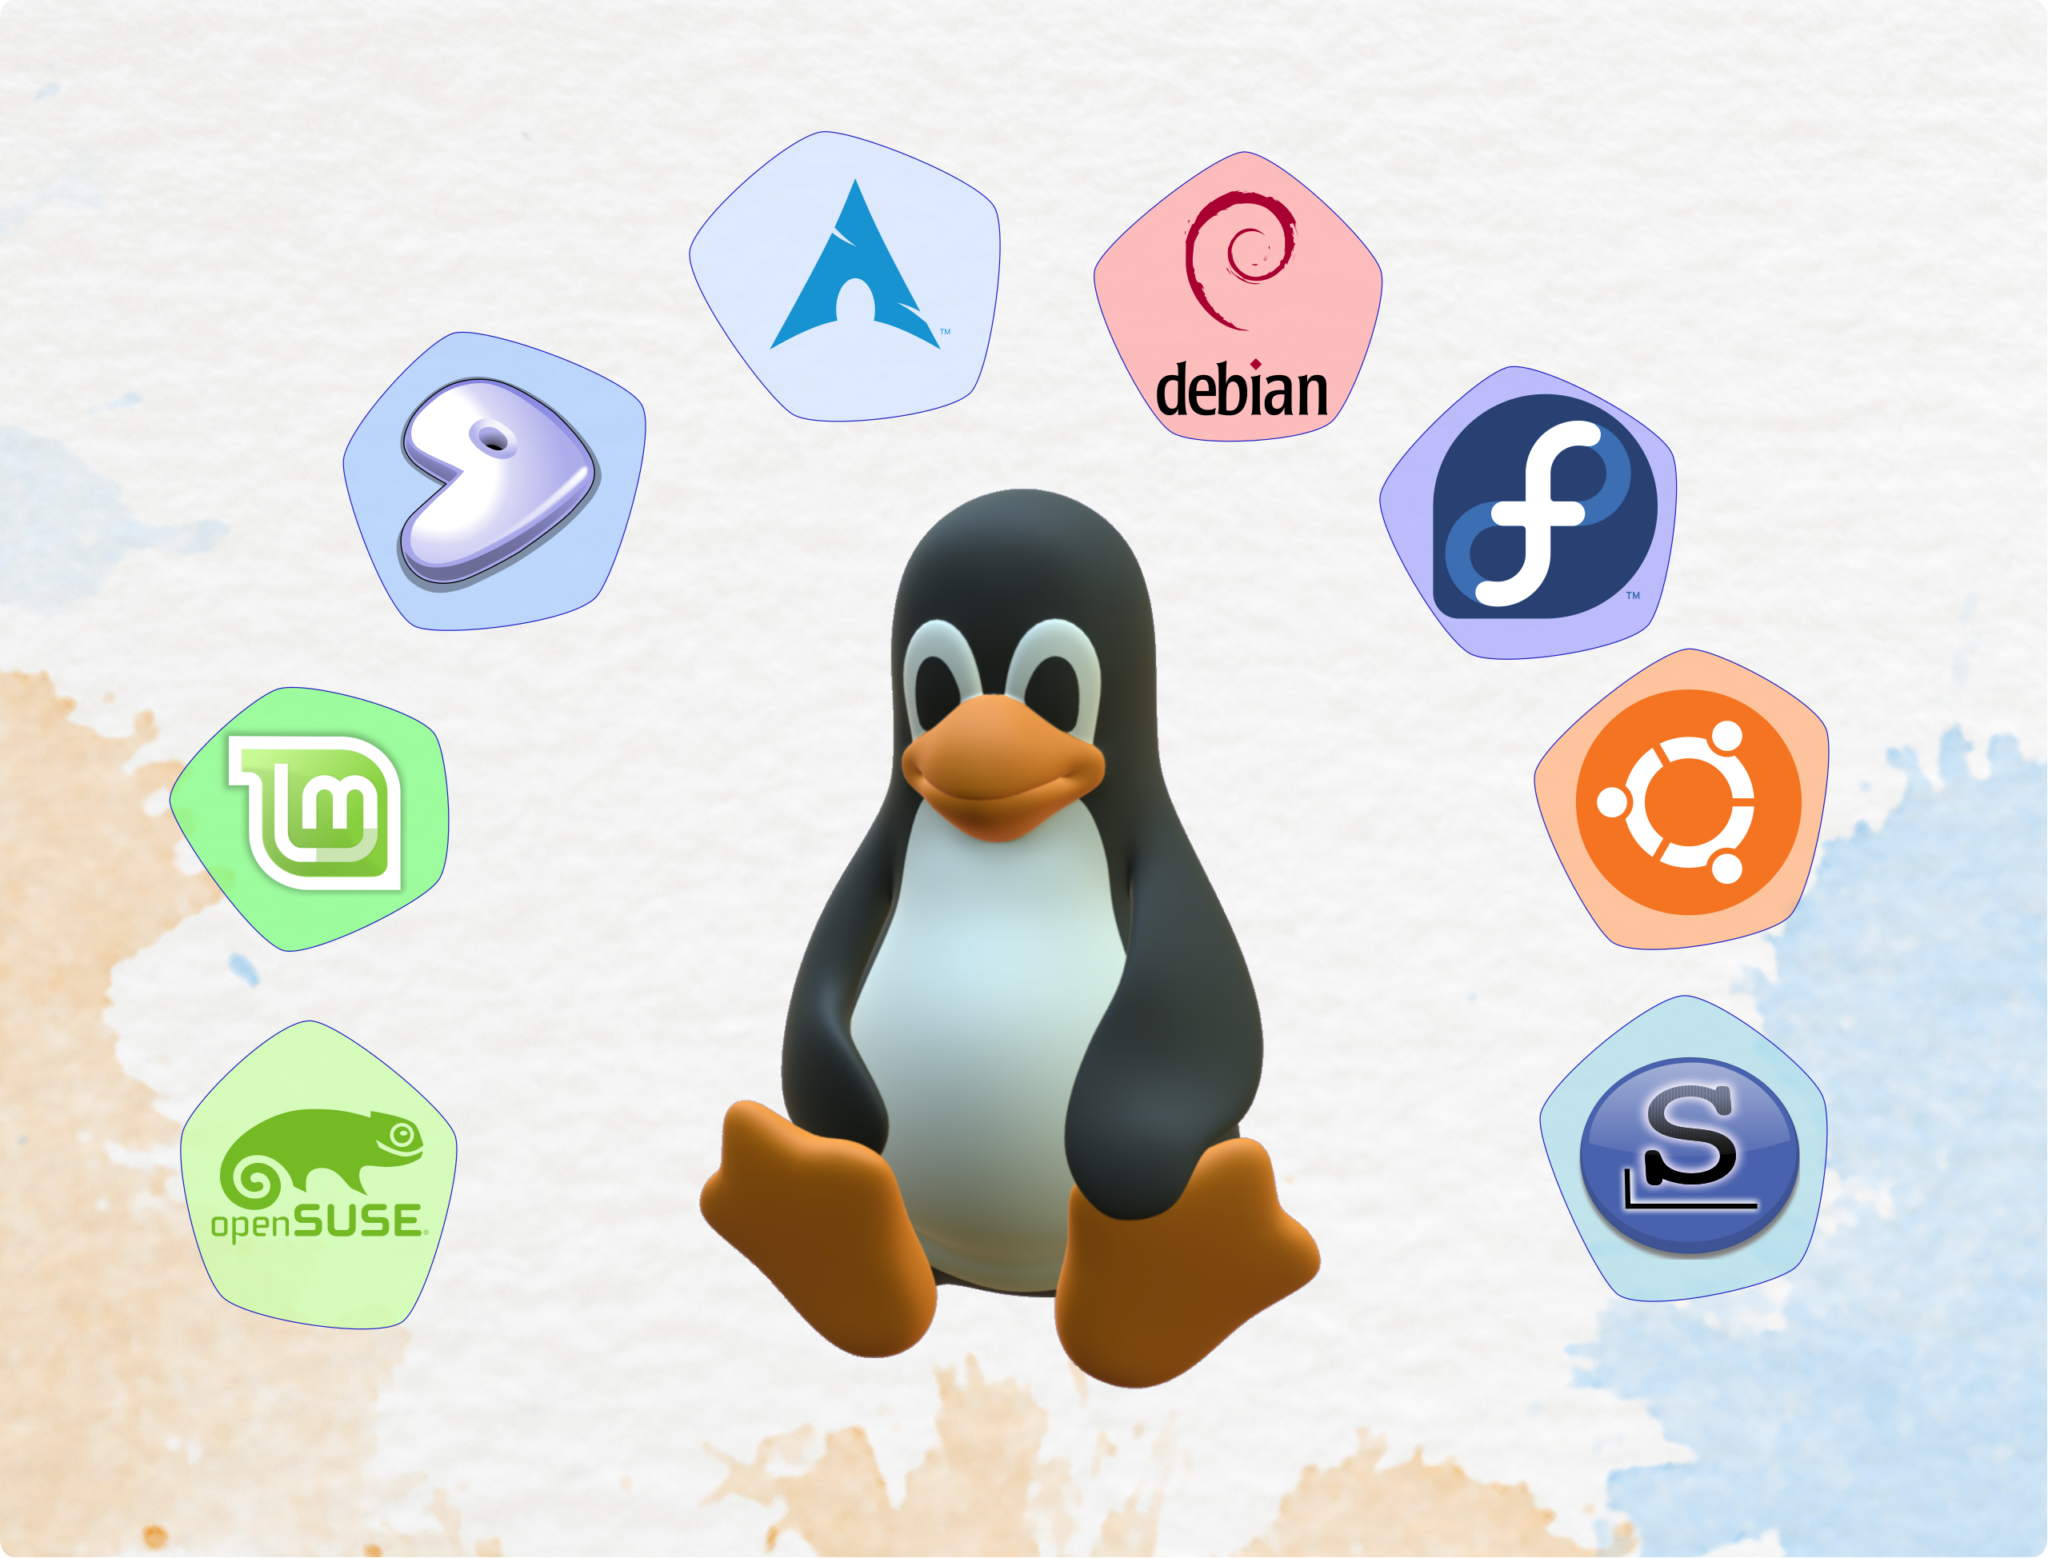 Linux logos